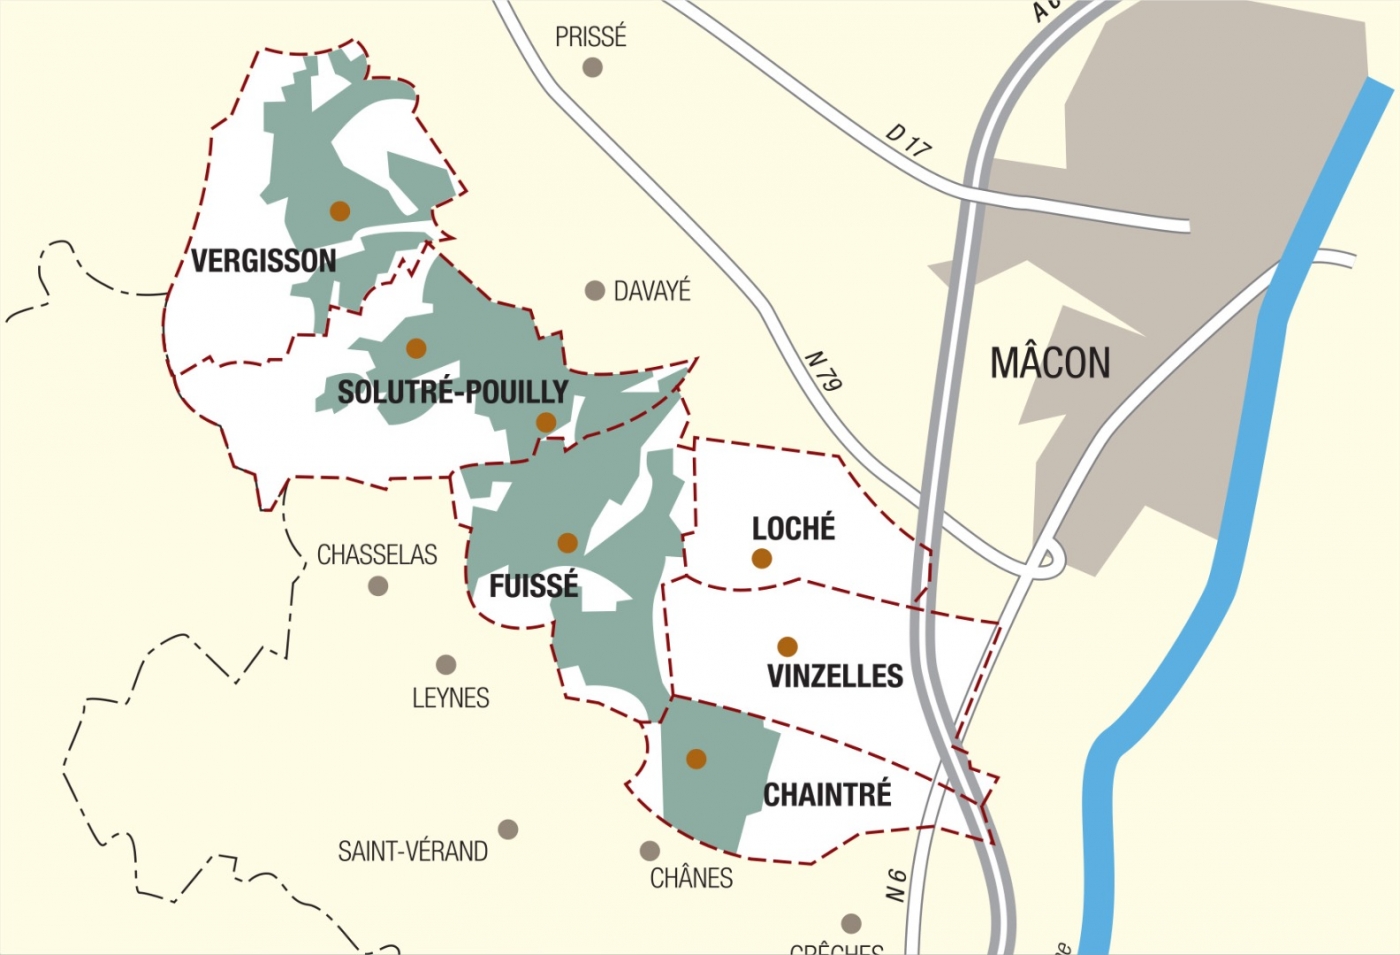 Carte parcelle vin - Pouilly-Fuissé Cuvée  « Terres de Fuissé » Bret Brothers